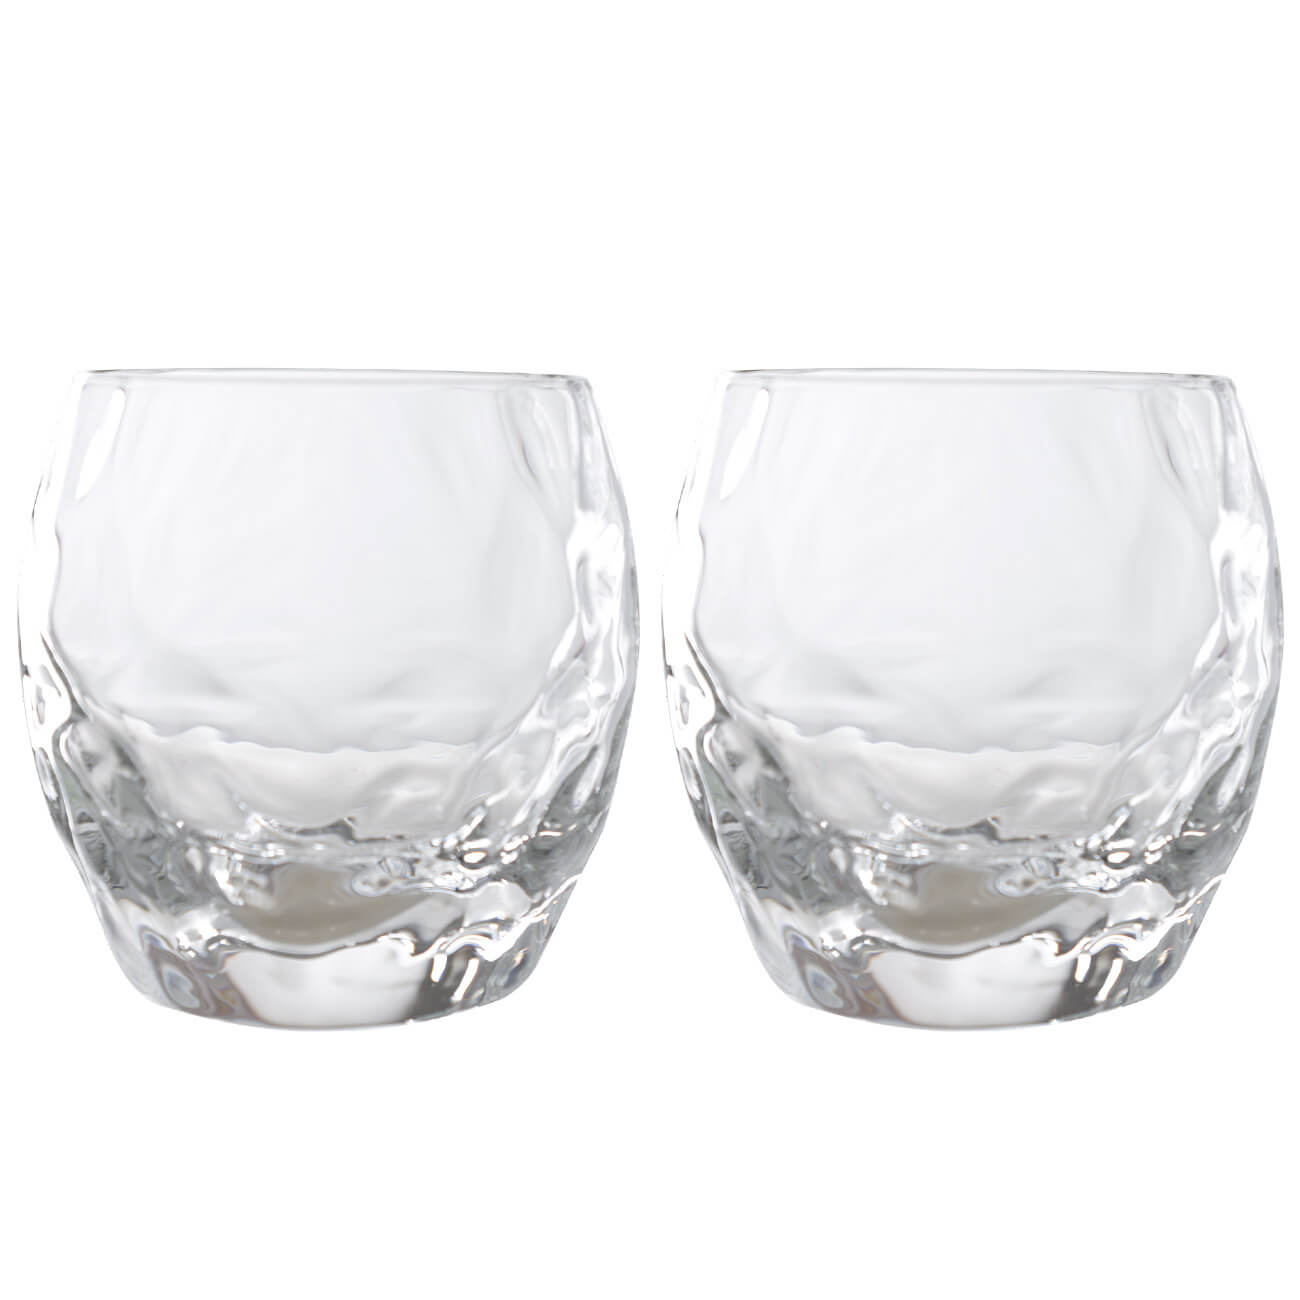 Стакан для виски, 9 см, 350 мл, 2 шт, стекло Р, Concave стакан для виски 330 мл стекло 6 шт glasstar триумф n 620 4